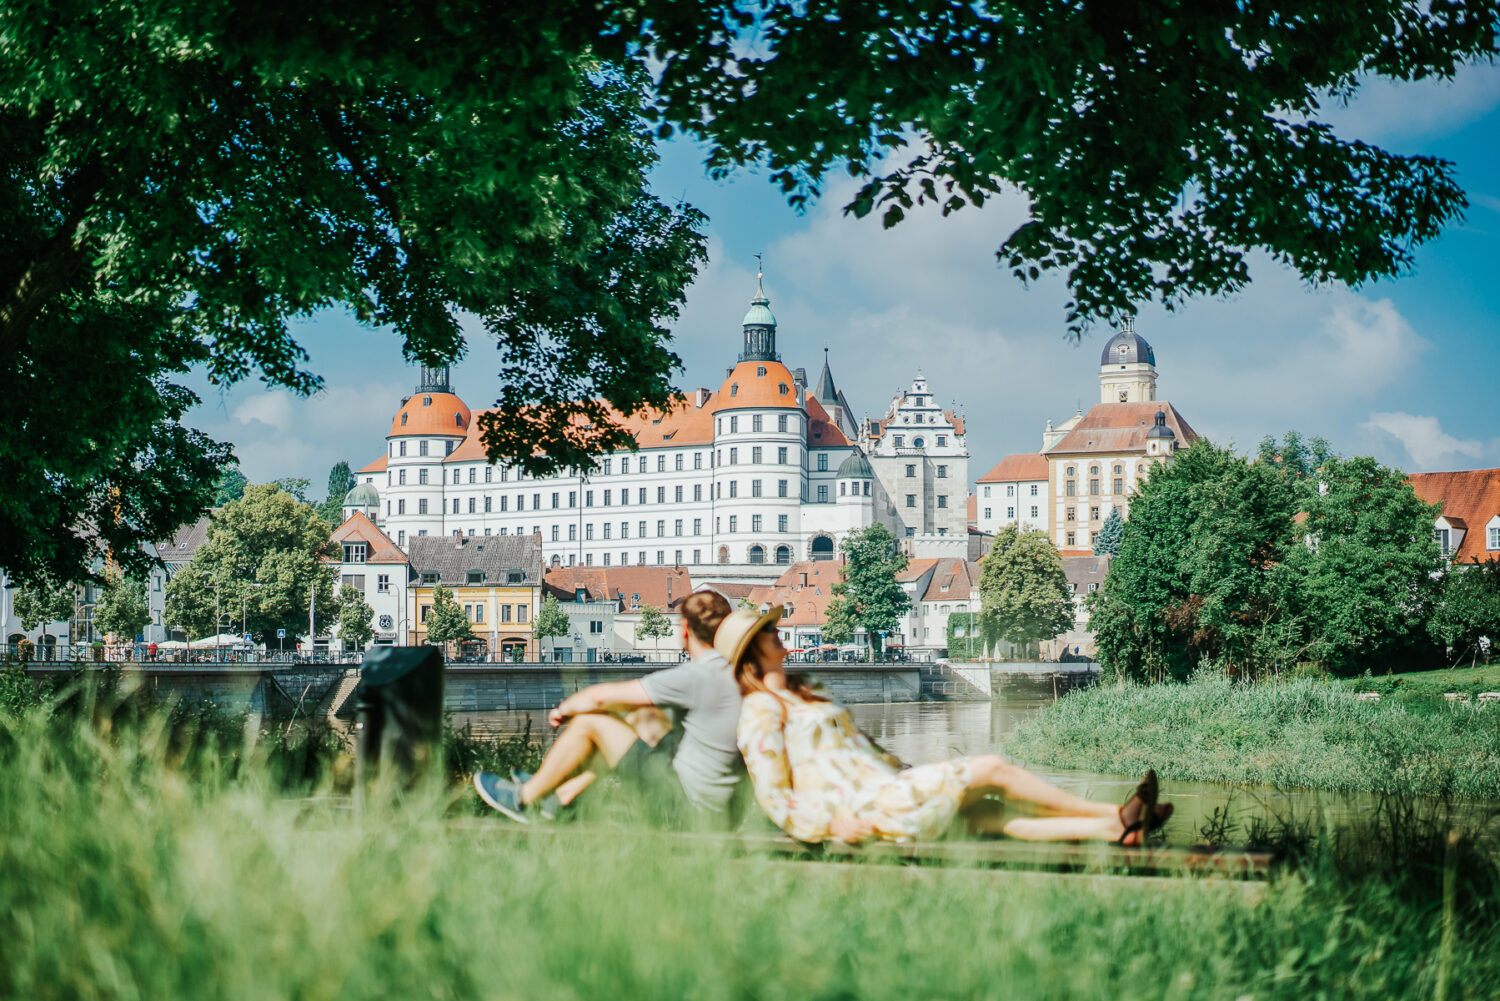 Image for City summer in Neuburg on the Danube